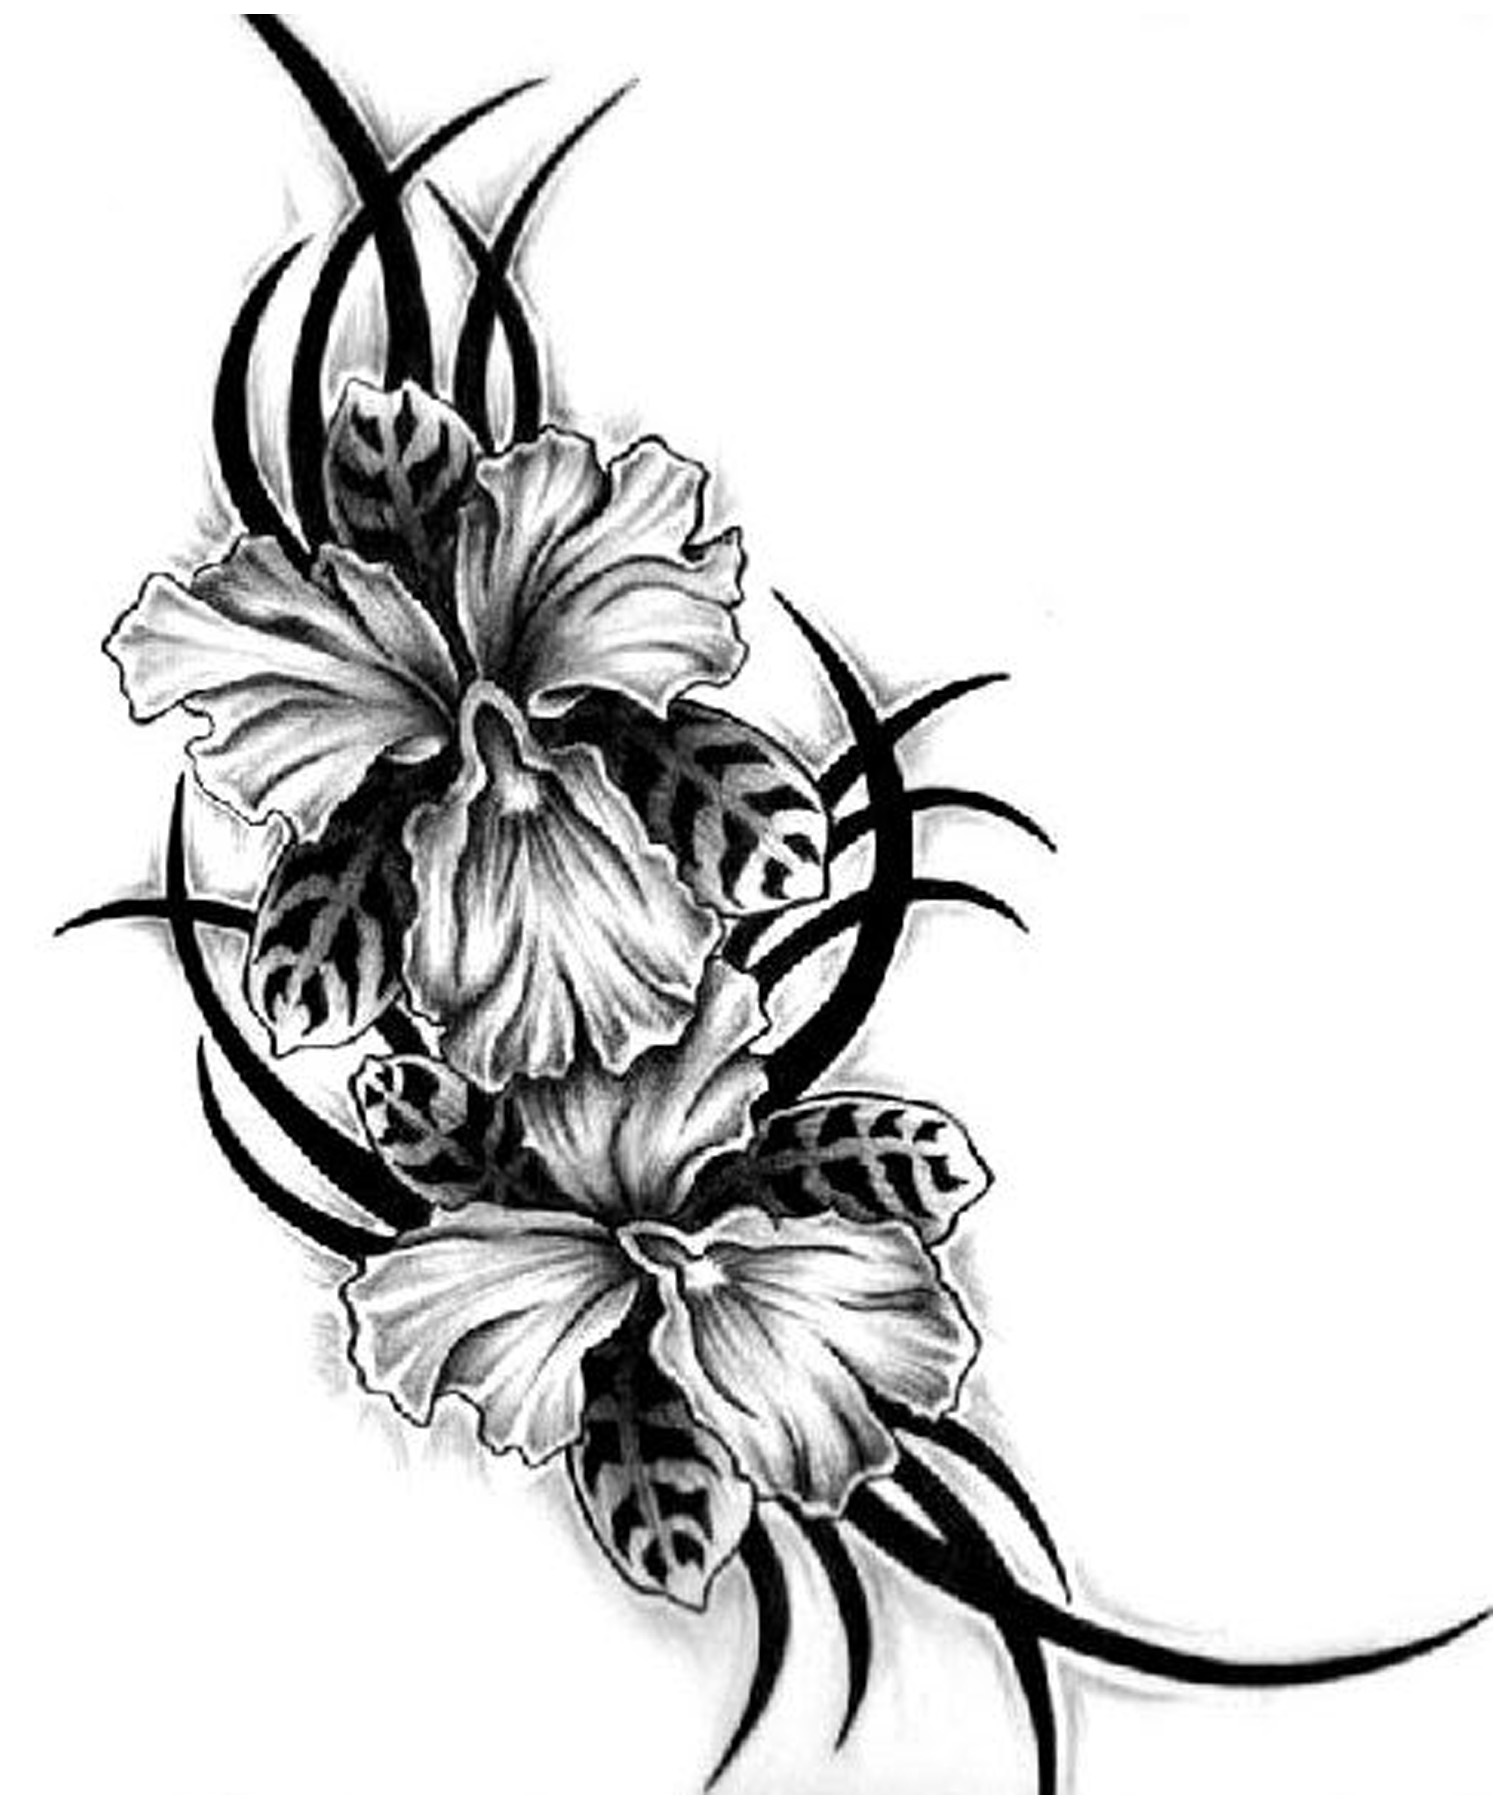 tattoo tribal flower